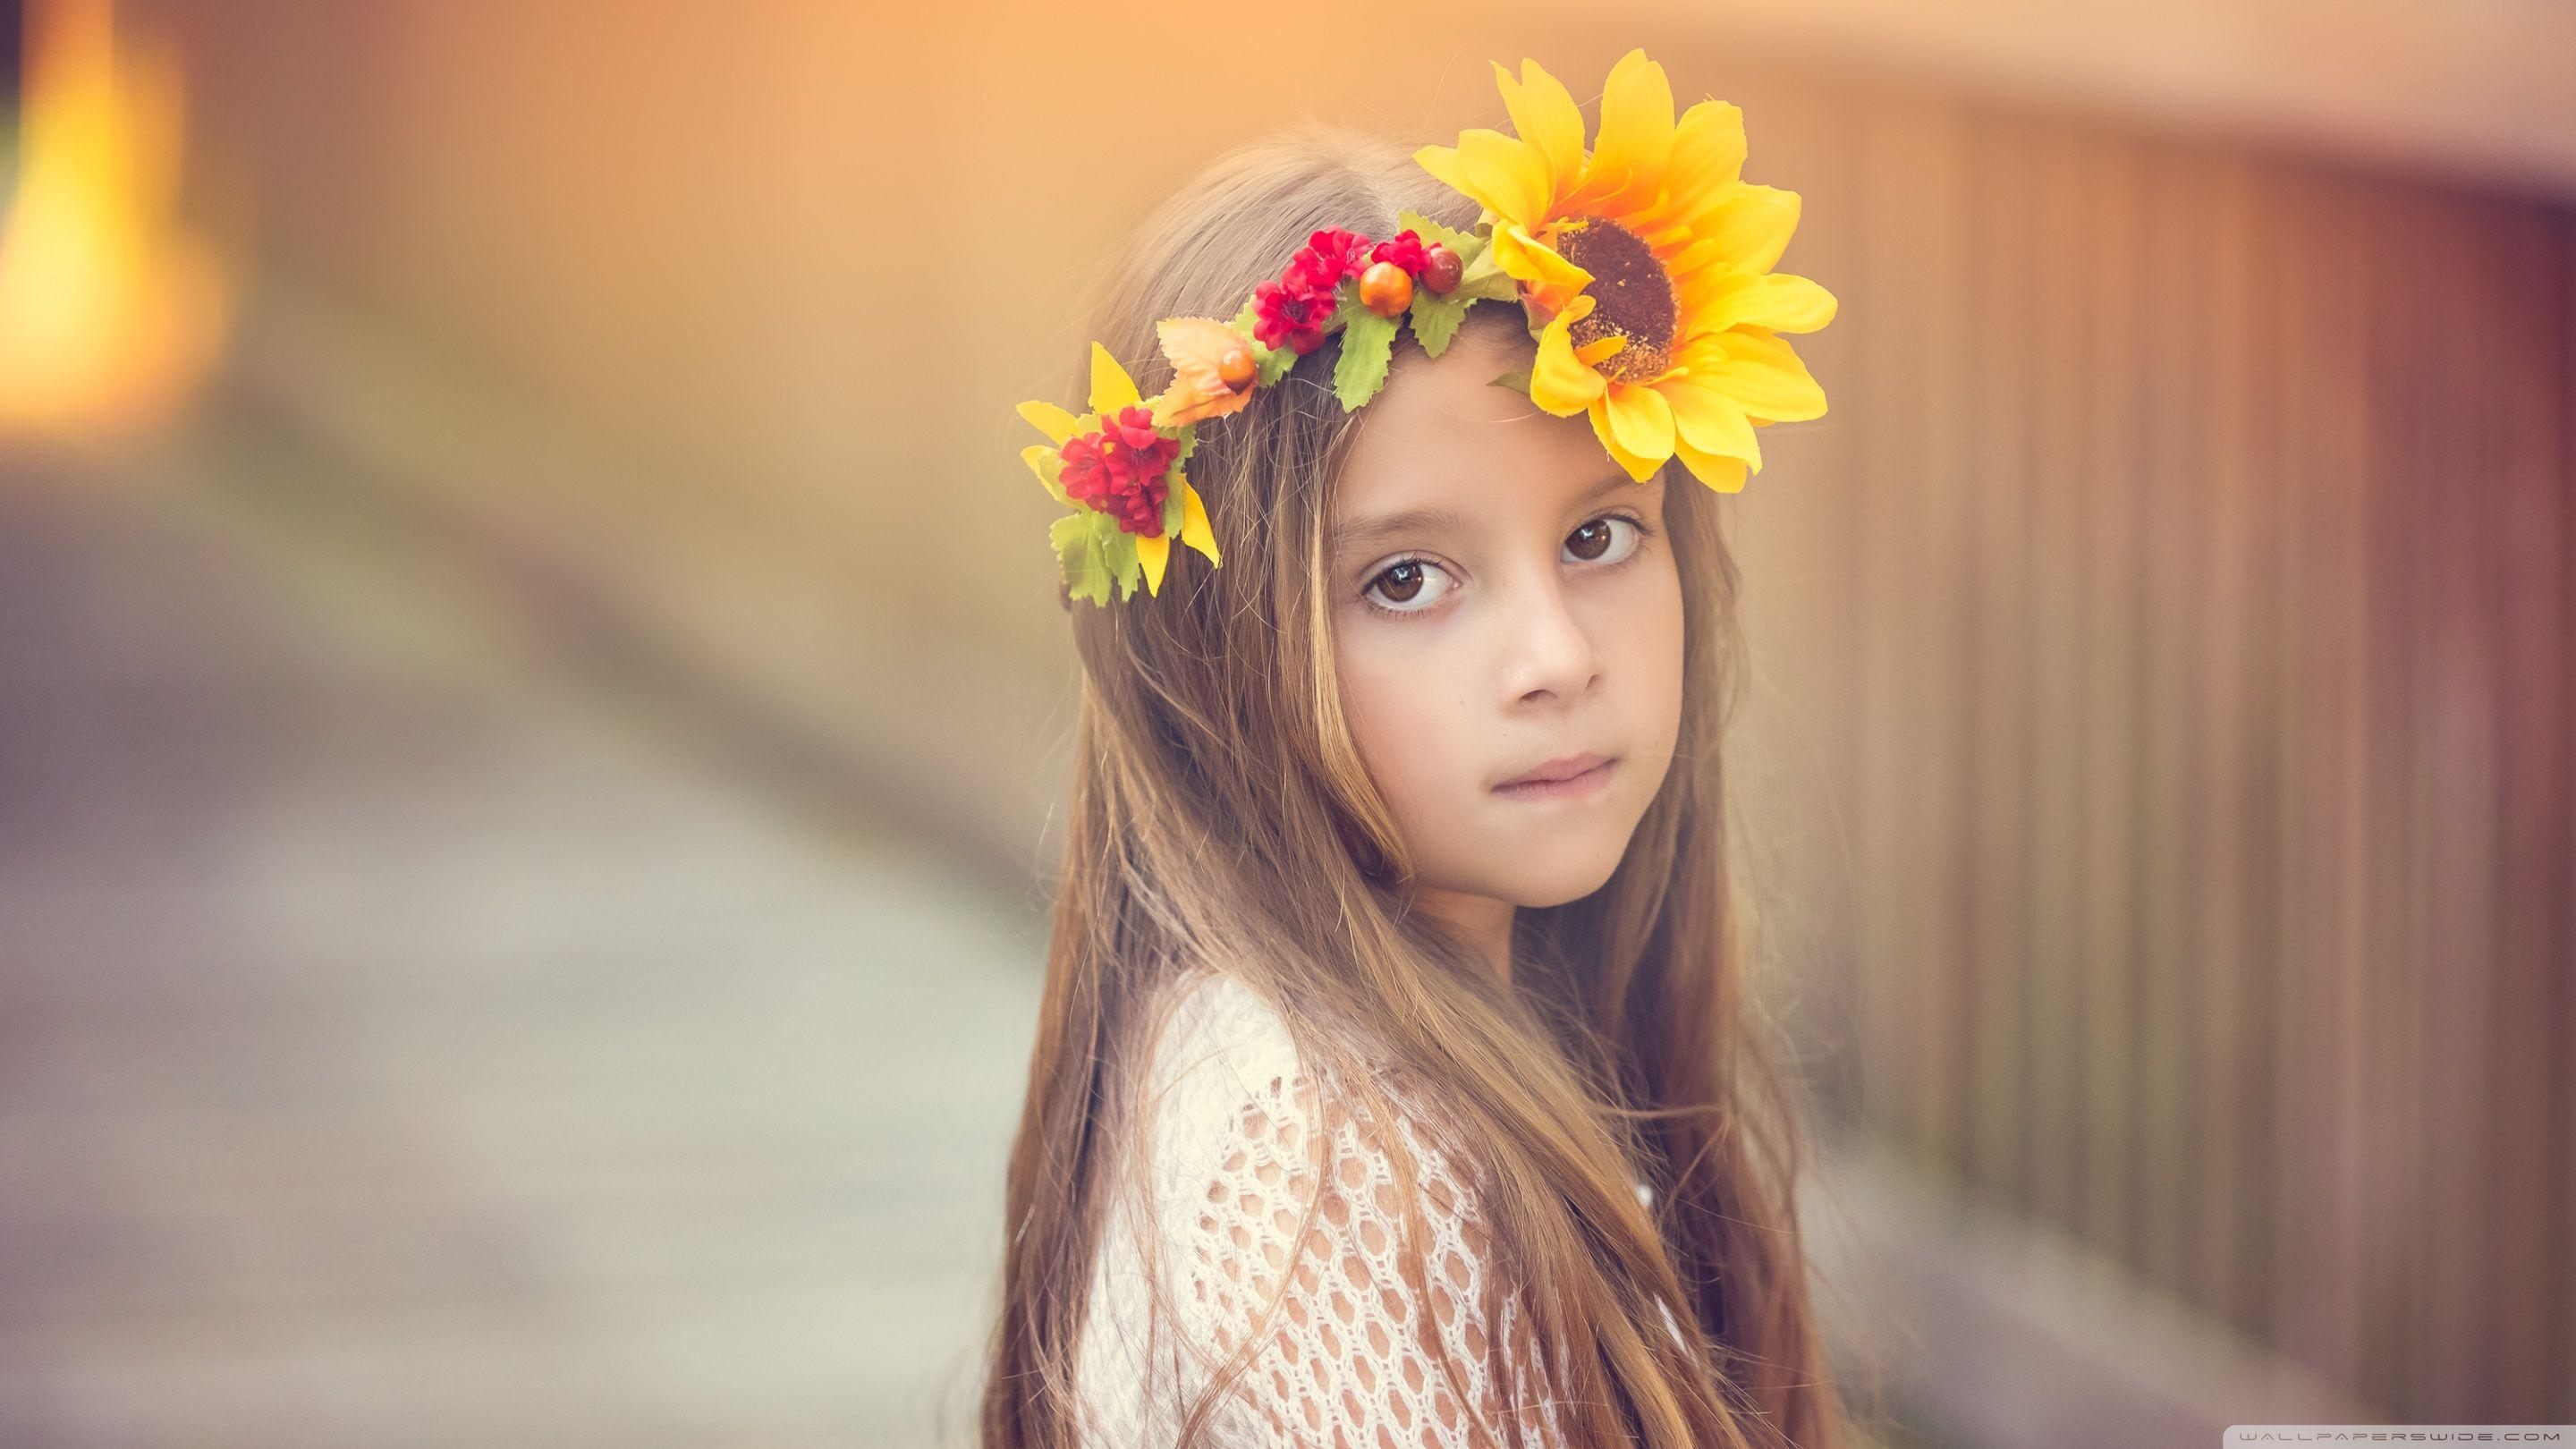 Child Girl Cute ❤ 4K HD Desktop Wallpaper for 4K Ultra HD TV • Wide